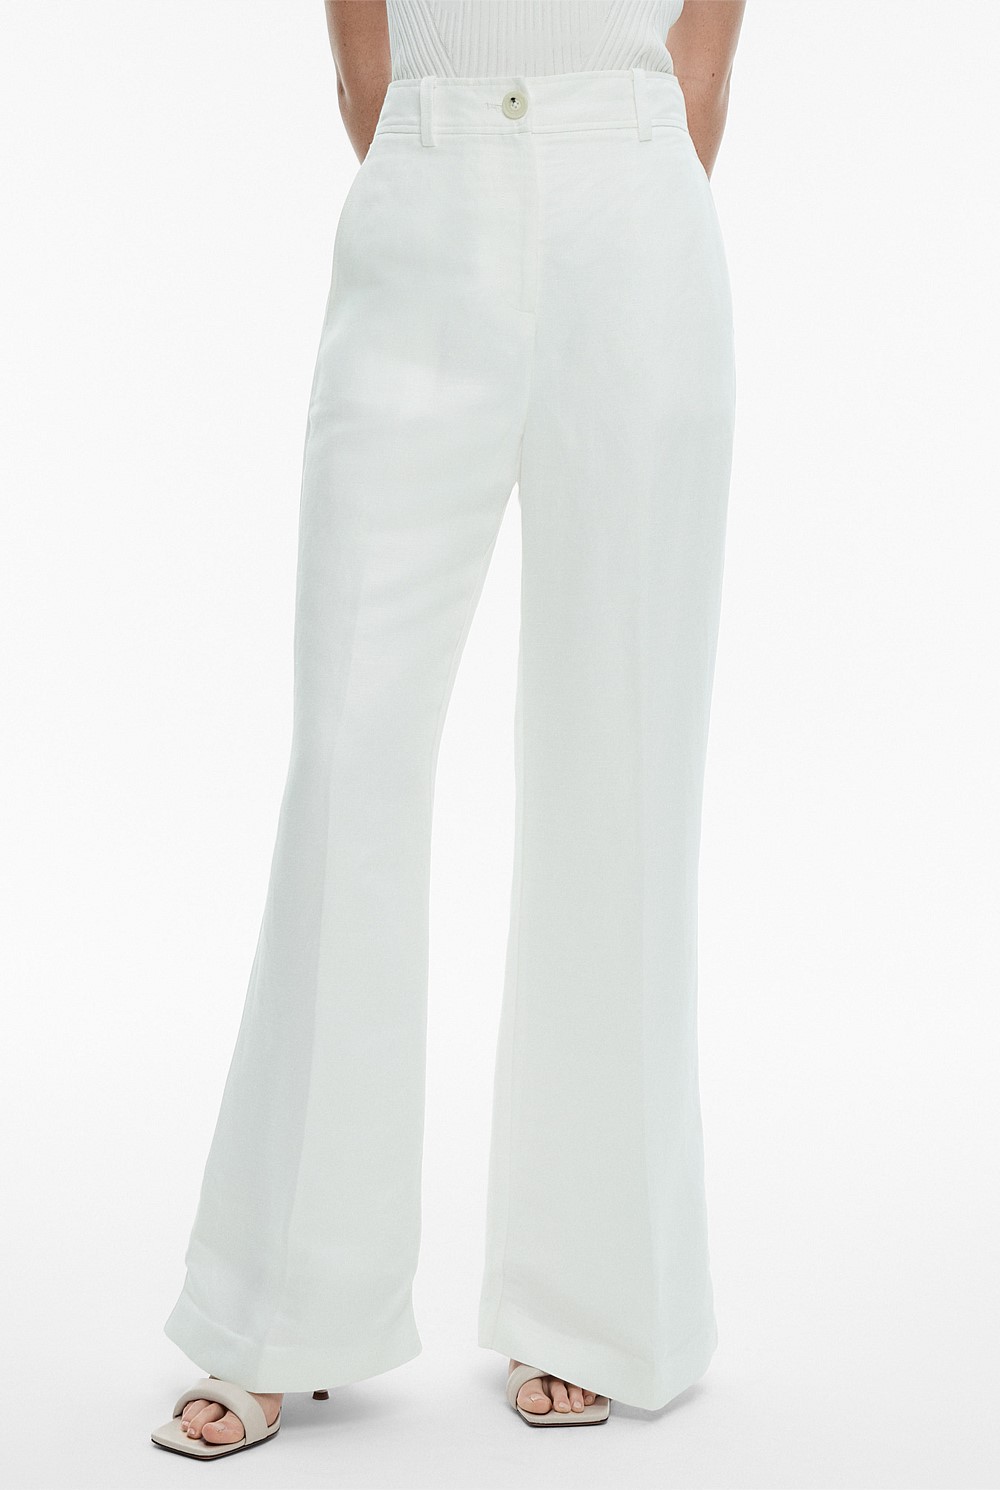 White Trousers - Matalan-saigonsouth.com.vn